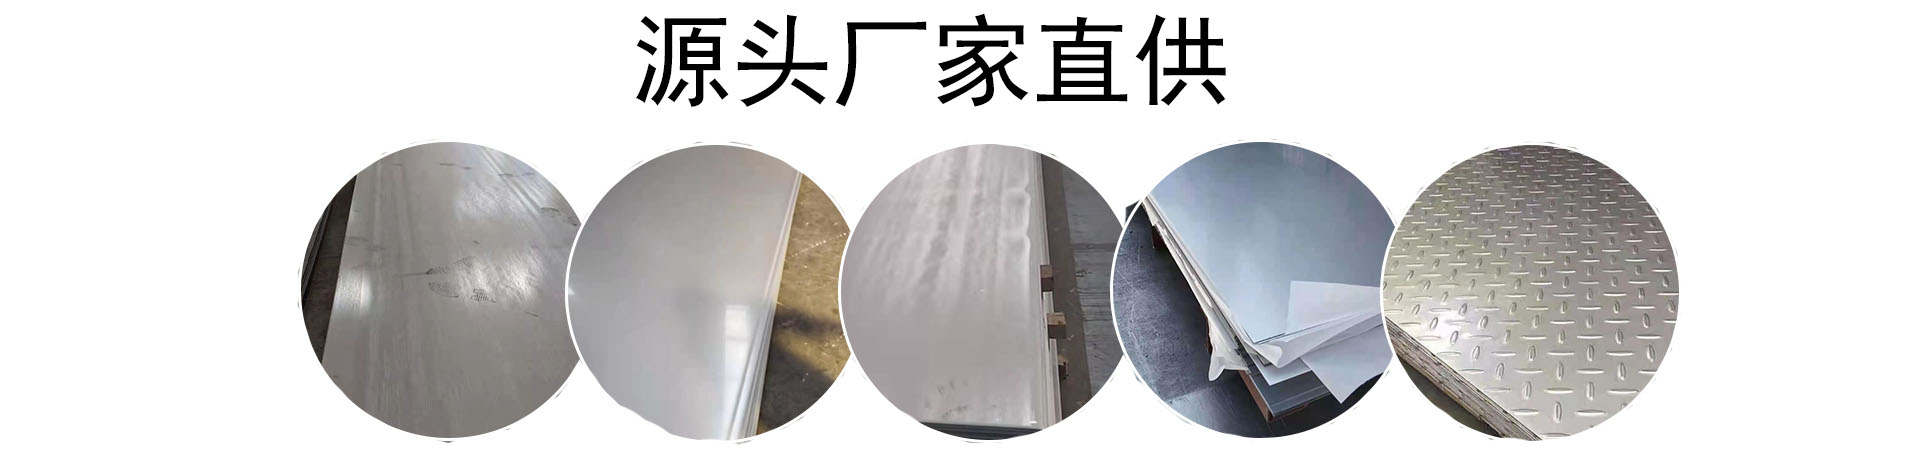 耐磨钢板现货、黑龙江本地耐磨钢板现货、黑龙江、黑龙江耐磨钢板现货